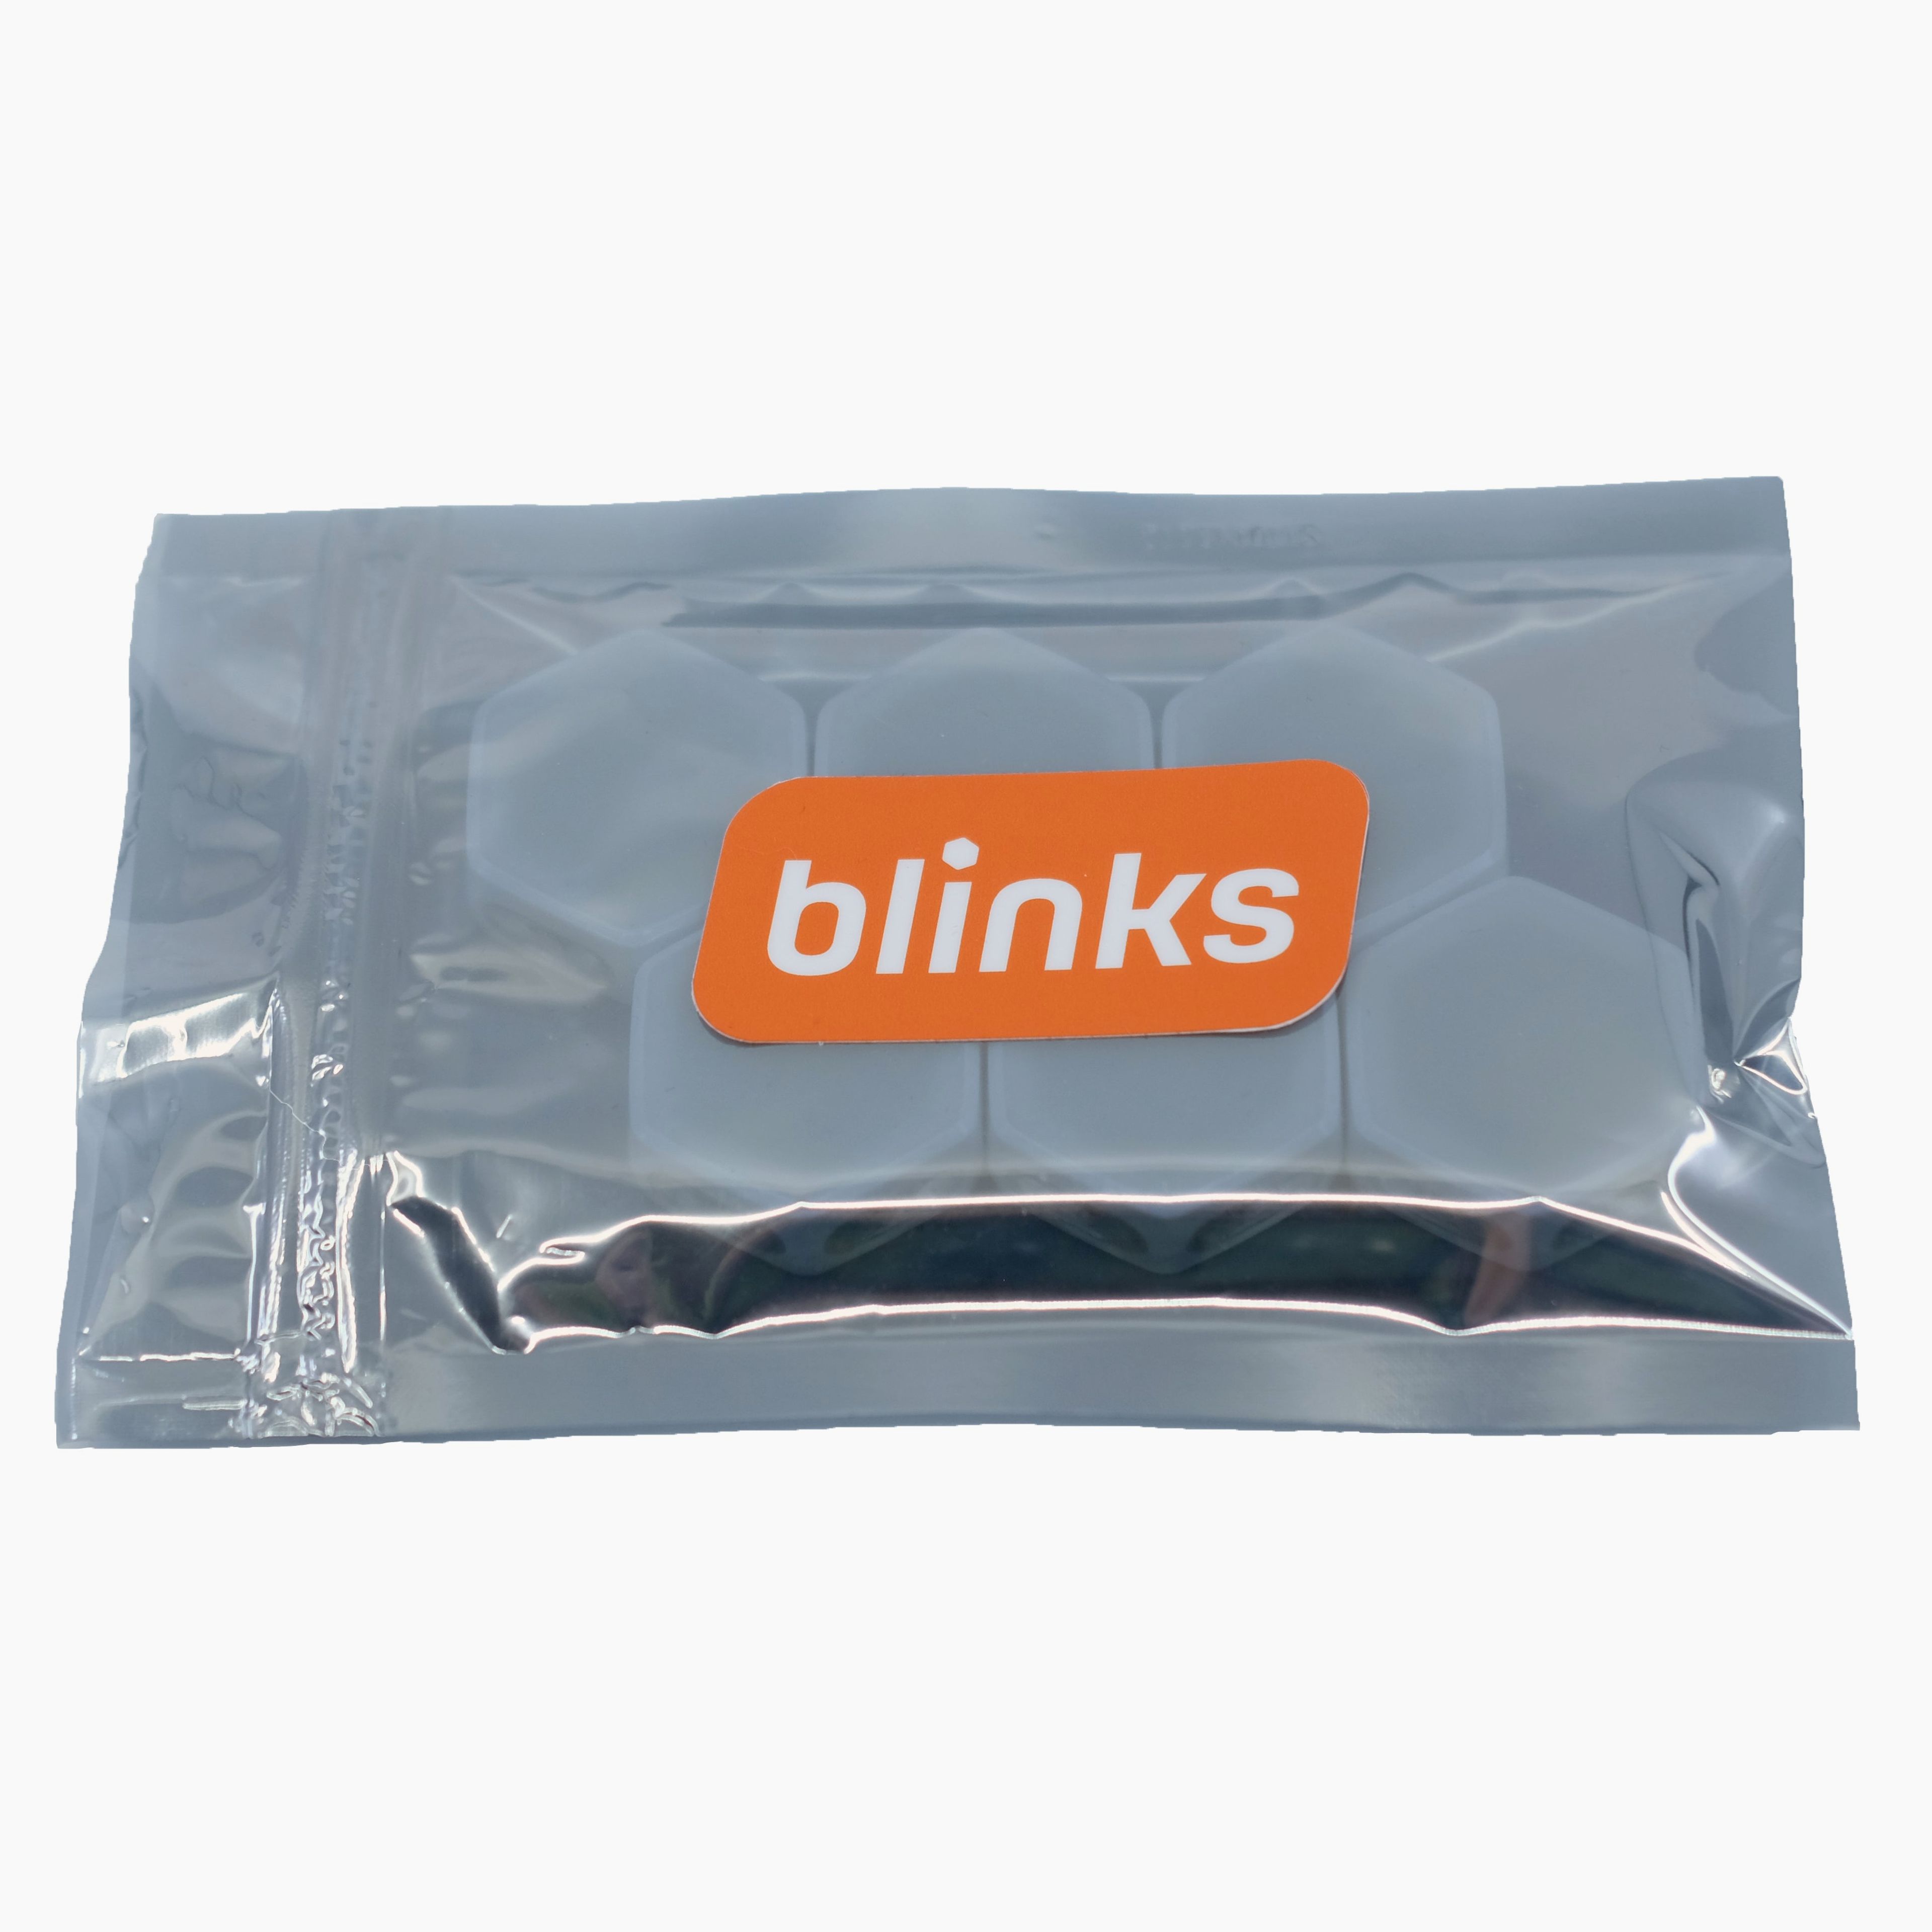 Blanks (6 Blinks)